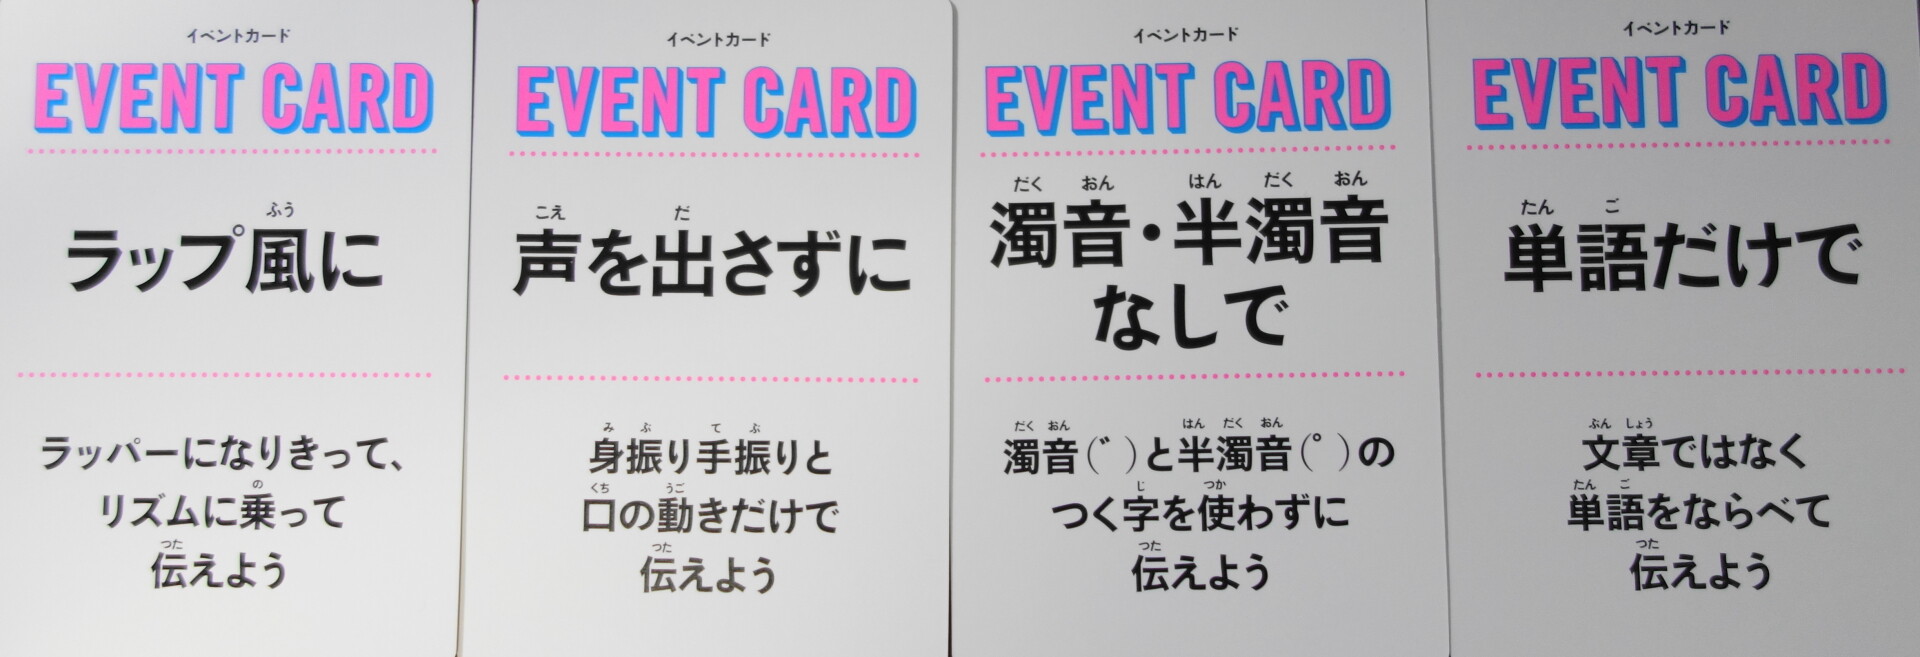 イベントカード